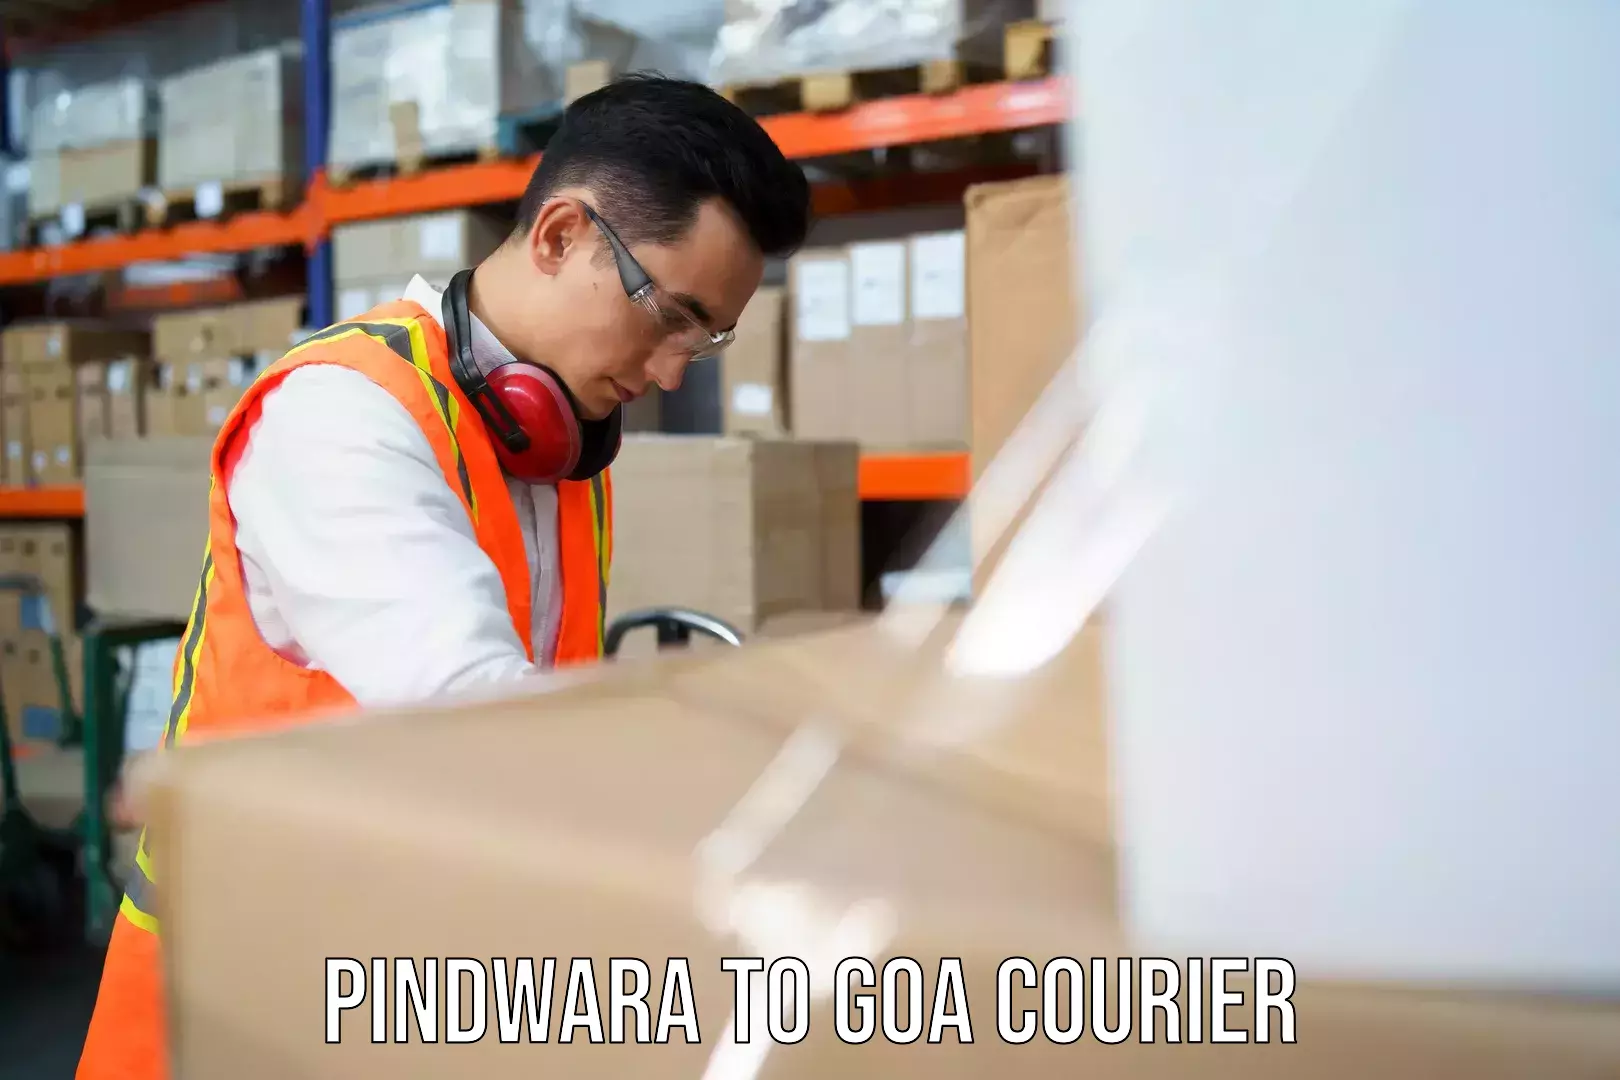 Next-day freight services Pindwara to Goa University